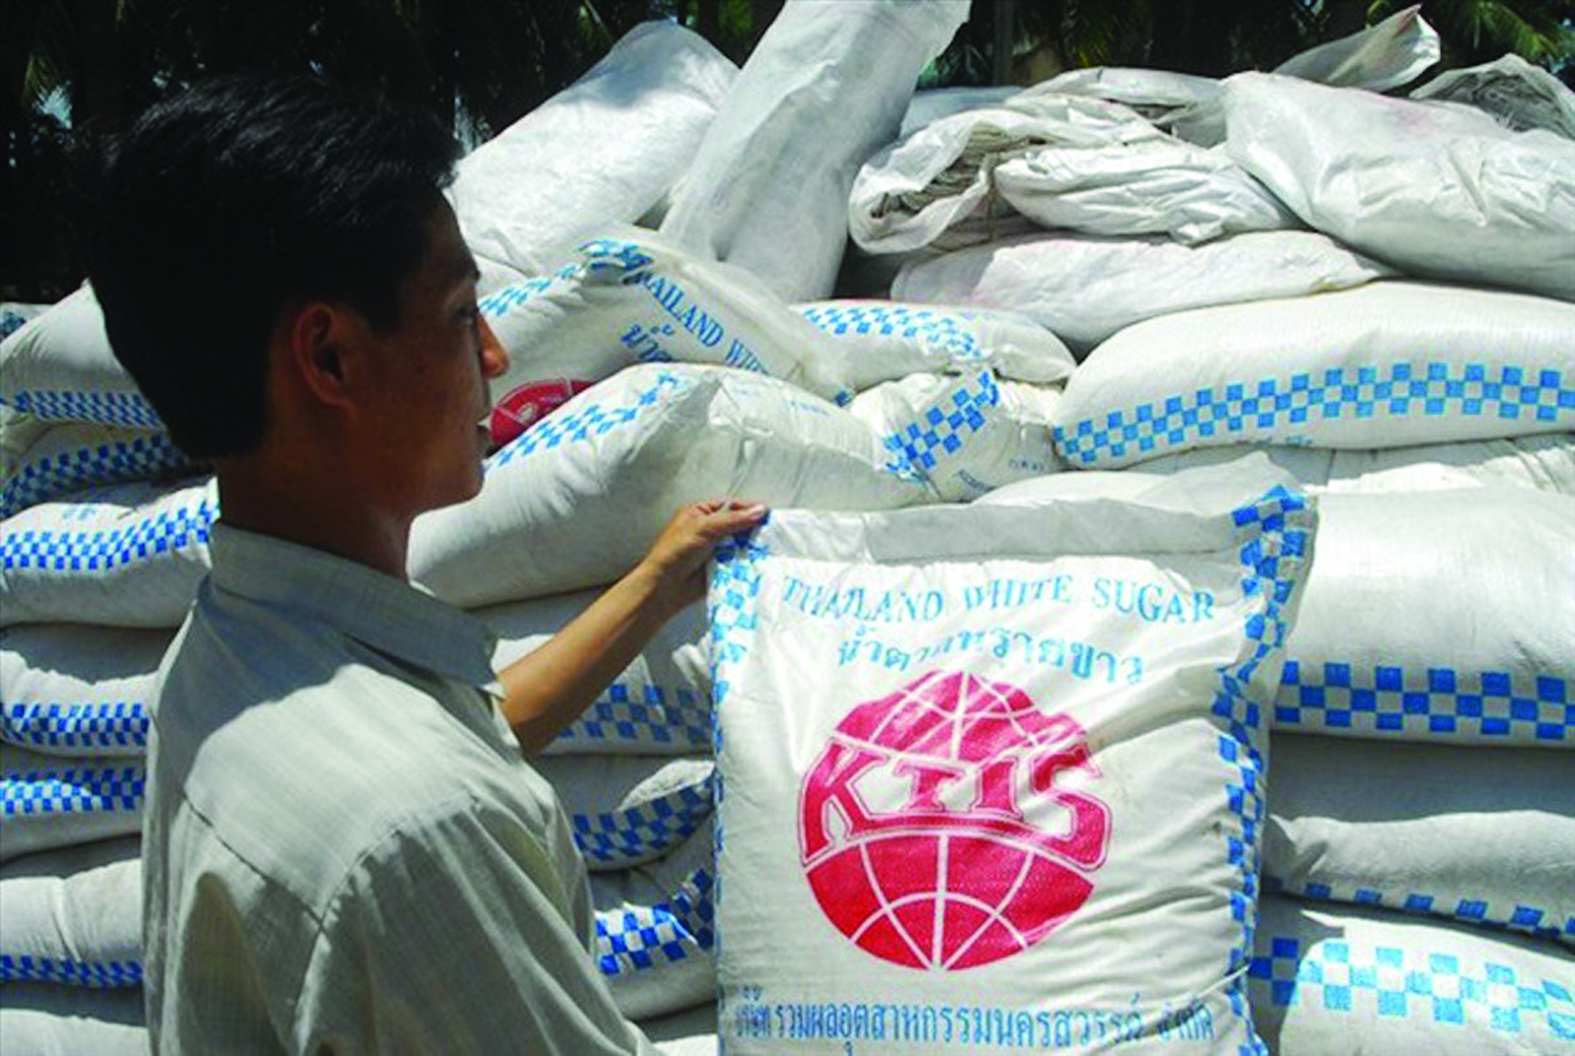 Với mức bán phá giá đường Thái Lan tại thị trường Việt Nam lên tới 48,88%, ngành mía đường trong nước khó có thể chống đỡ nổi. Ảnh: L.Đ